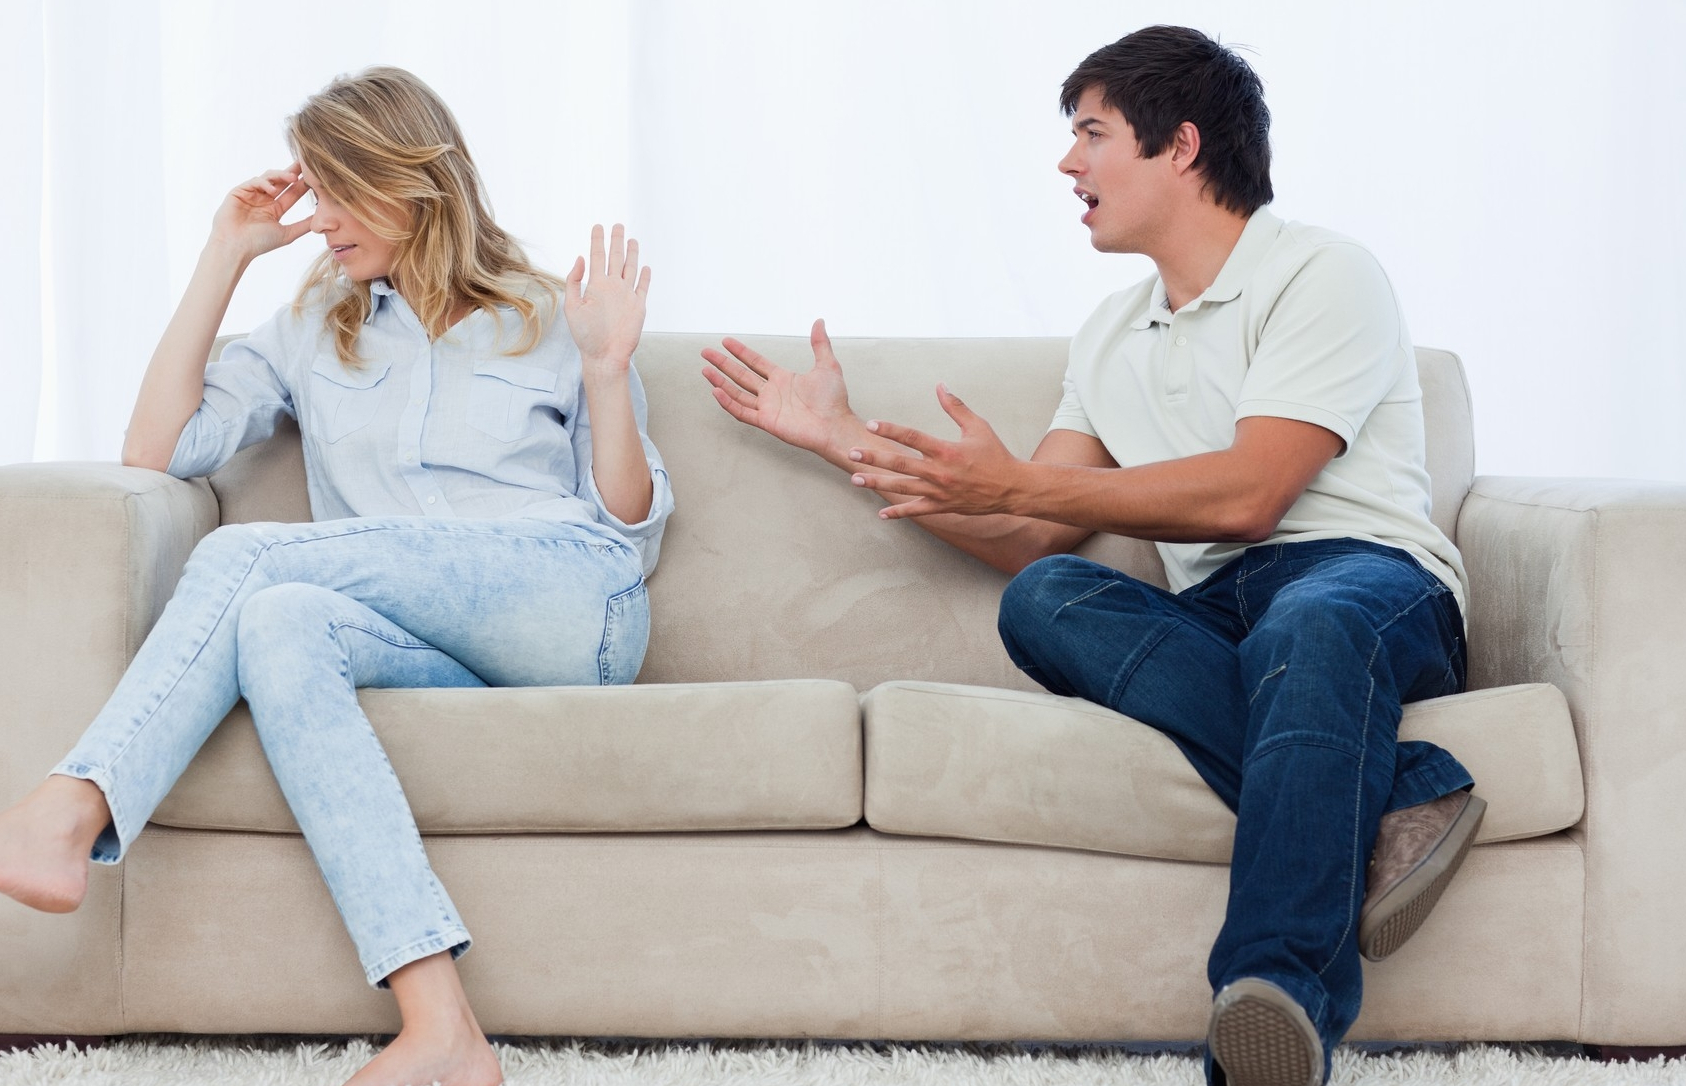 žena i čovek sede na kauču i svađaju se